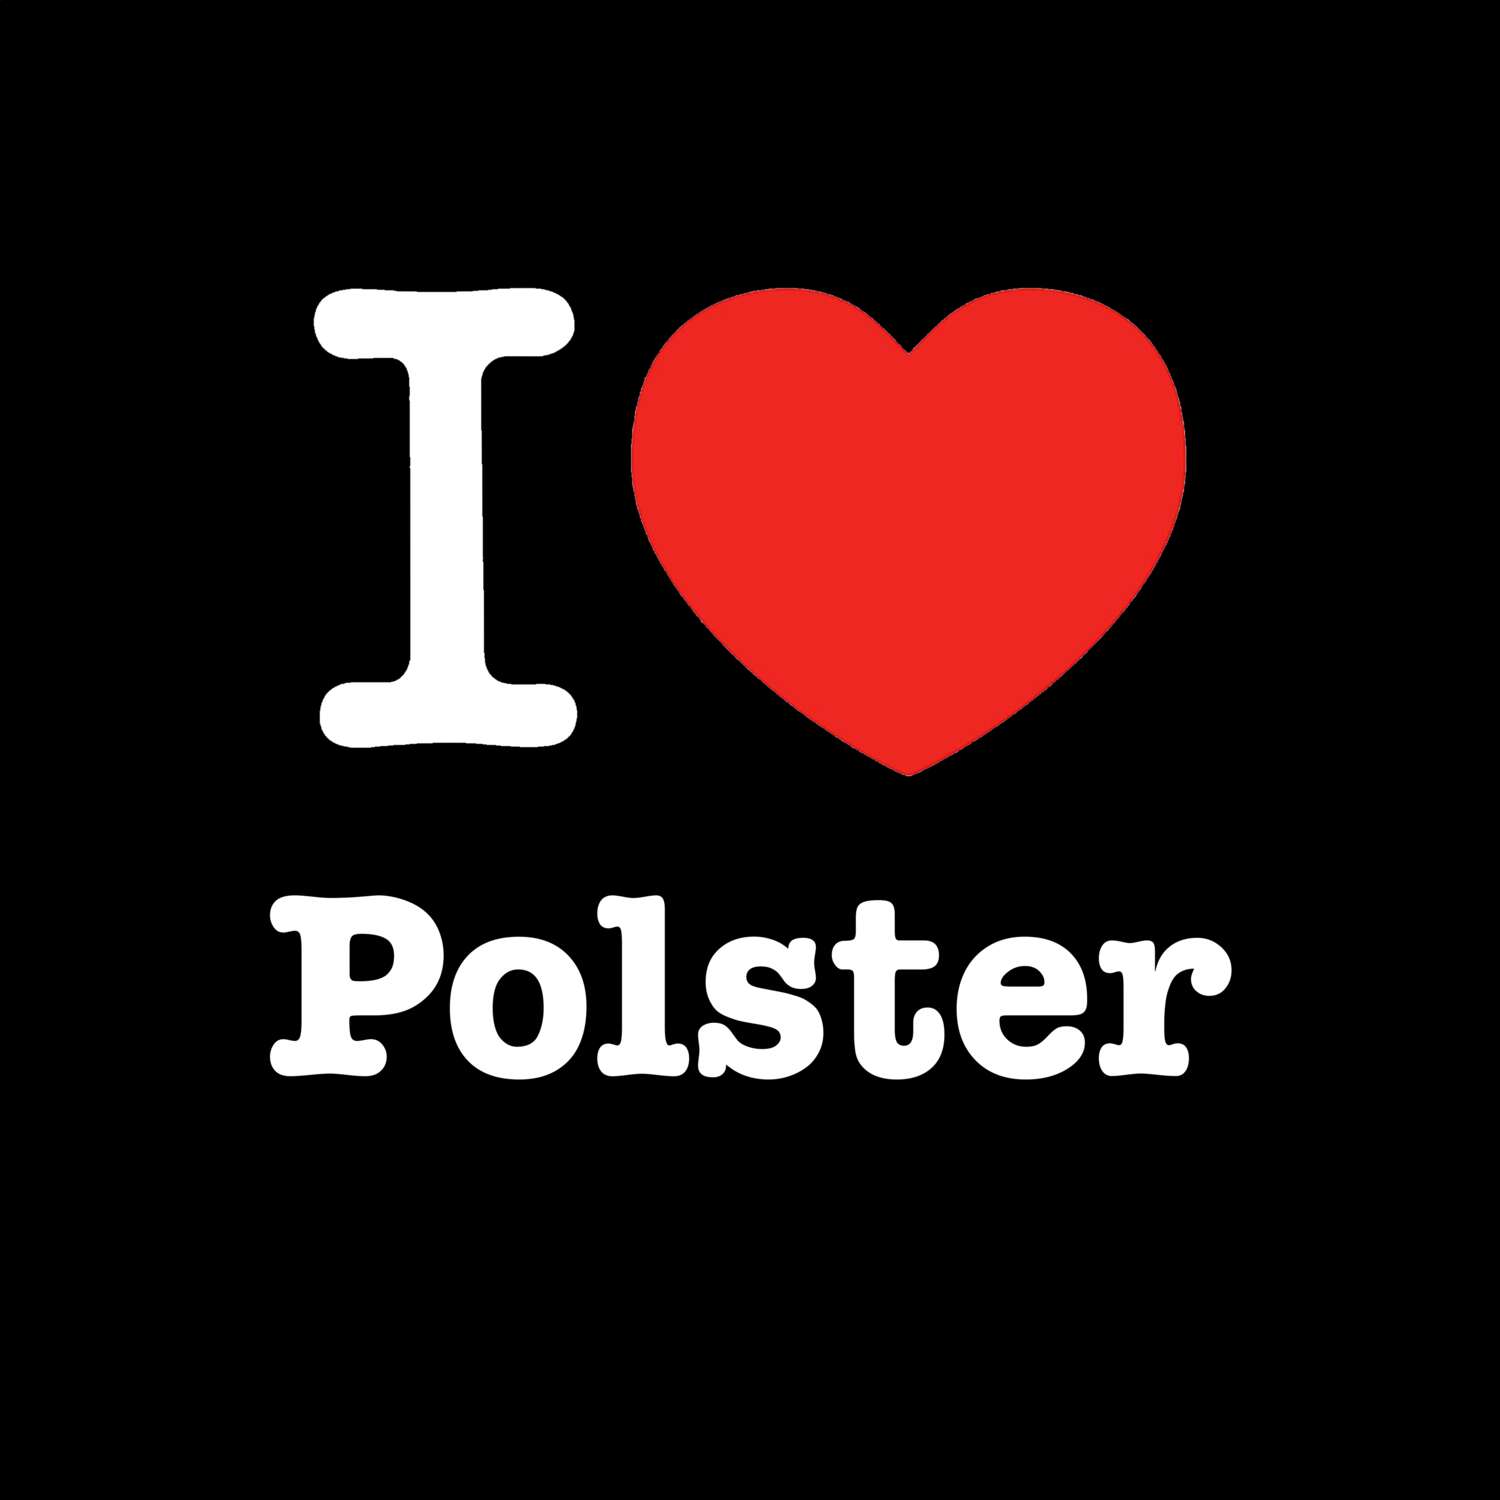 Polster T-Shirt »I love«